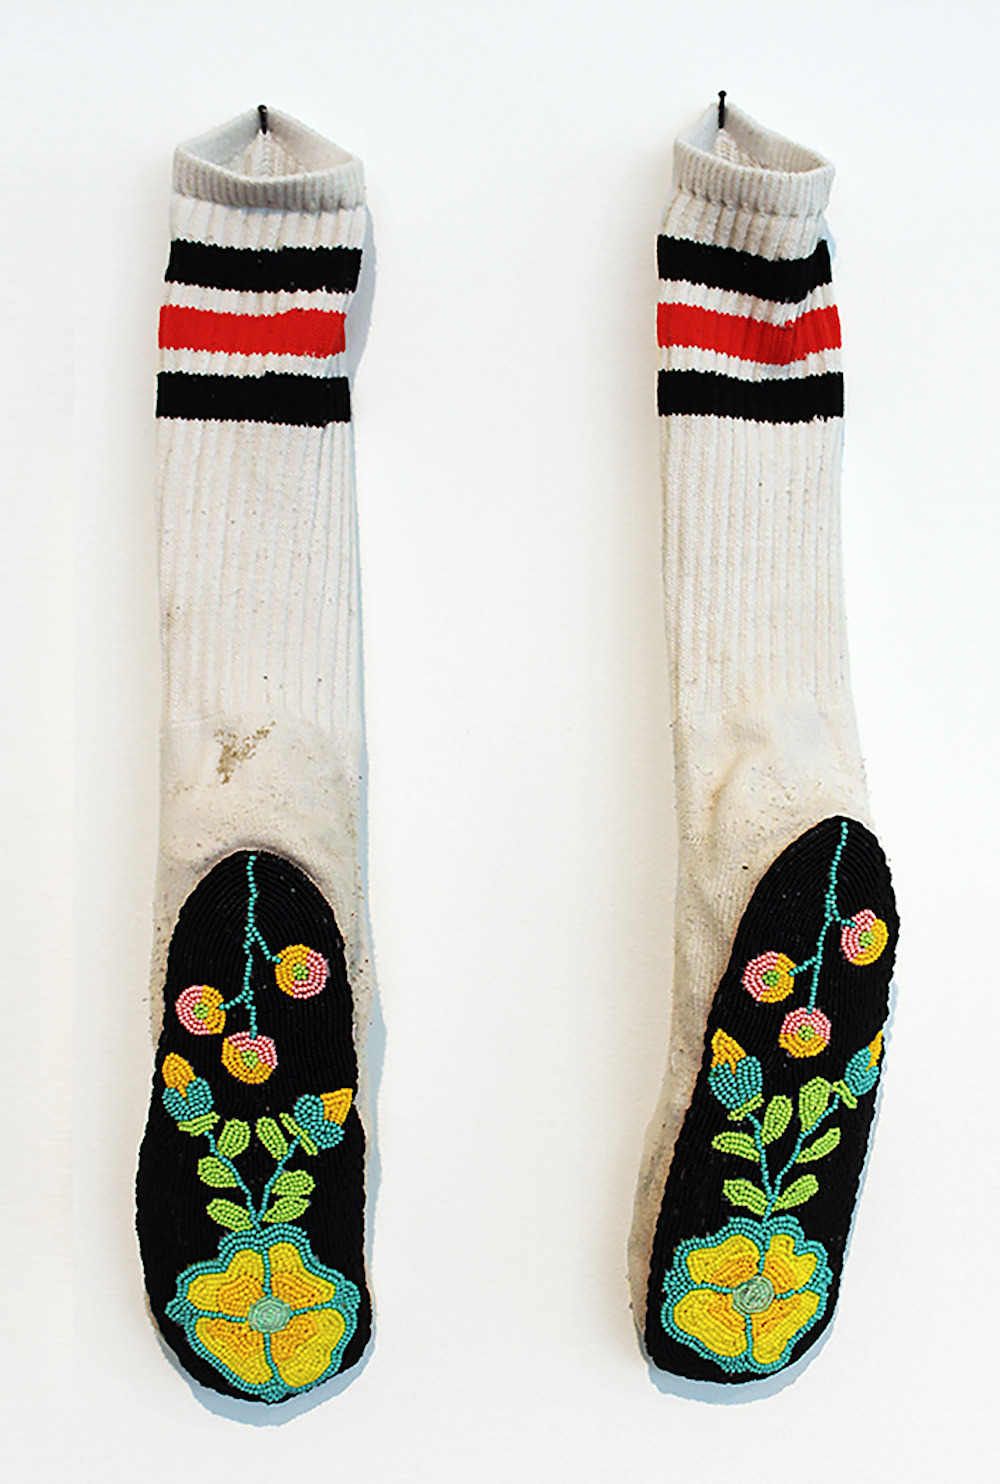 Audie Murray: Pair of Socks